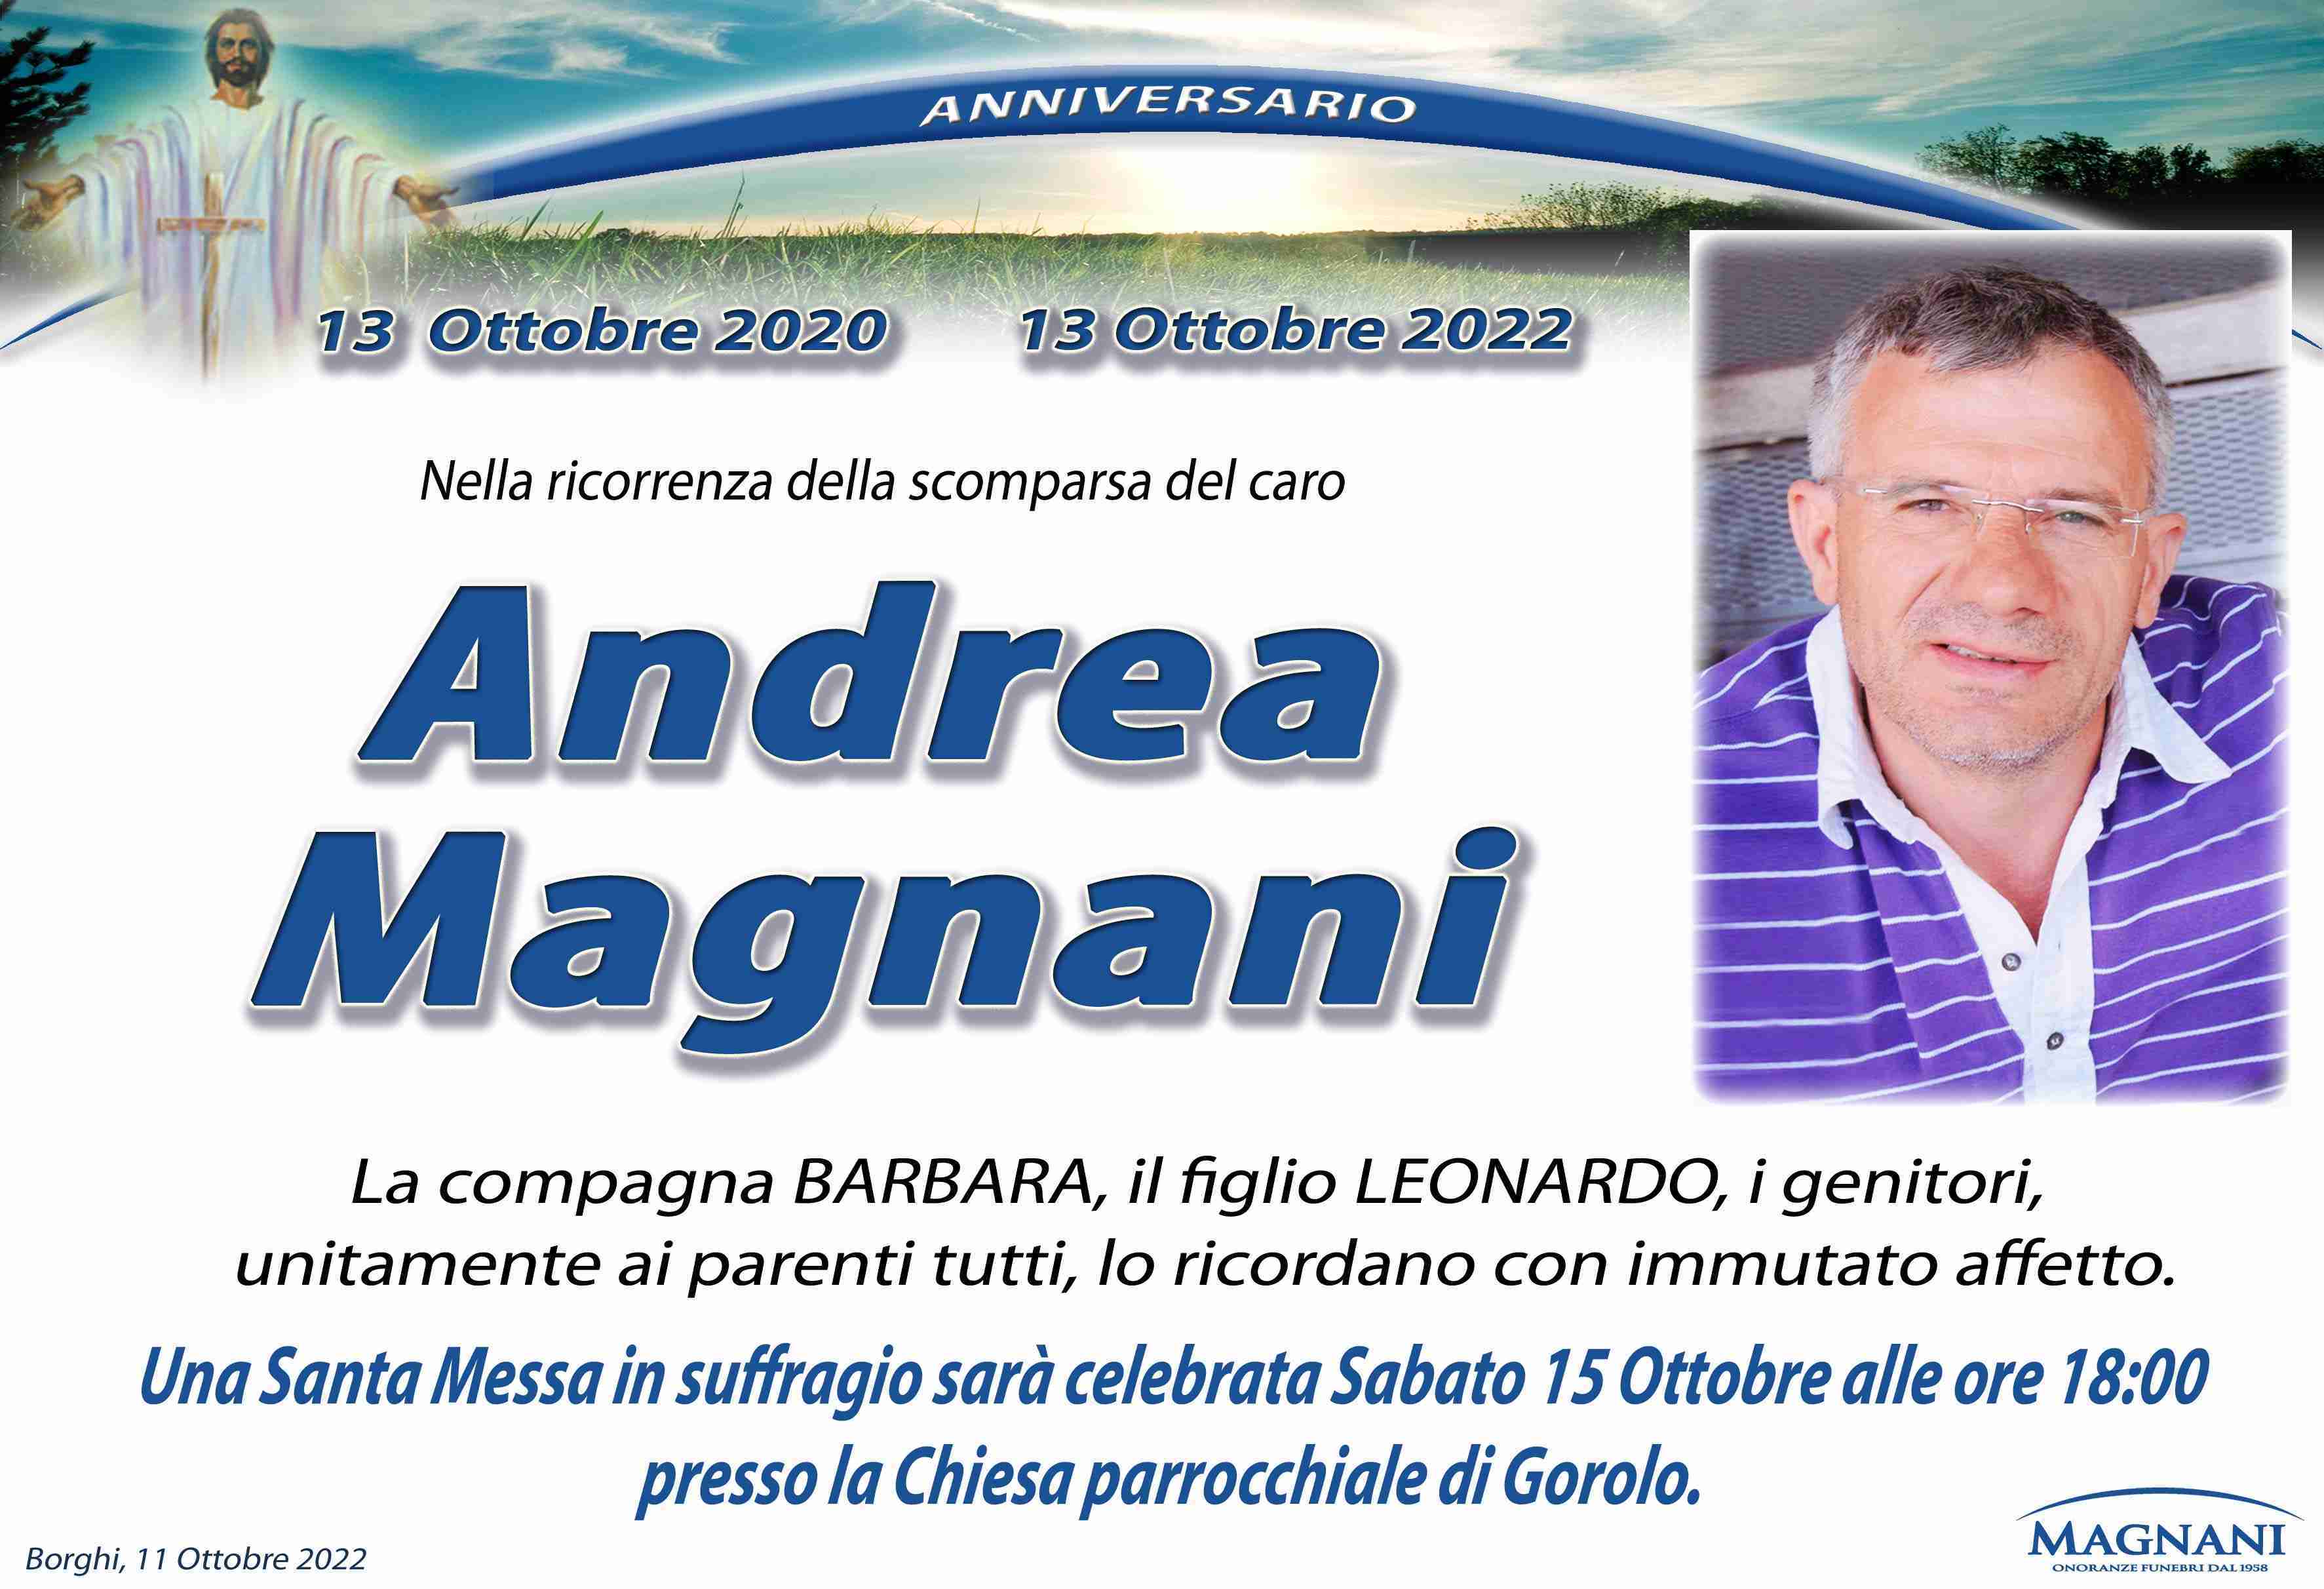 Andrea Magnani